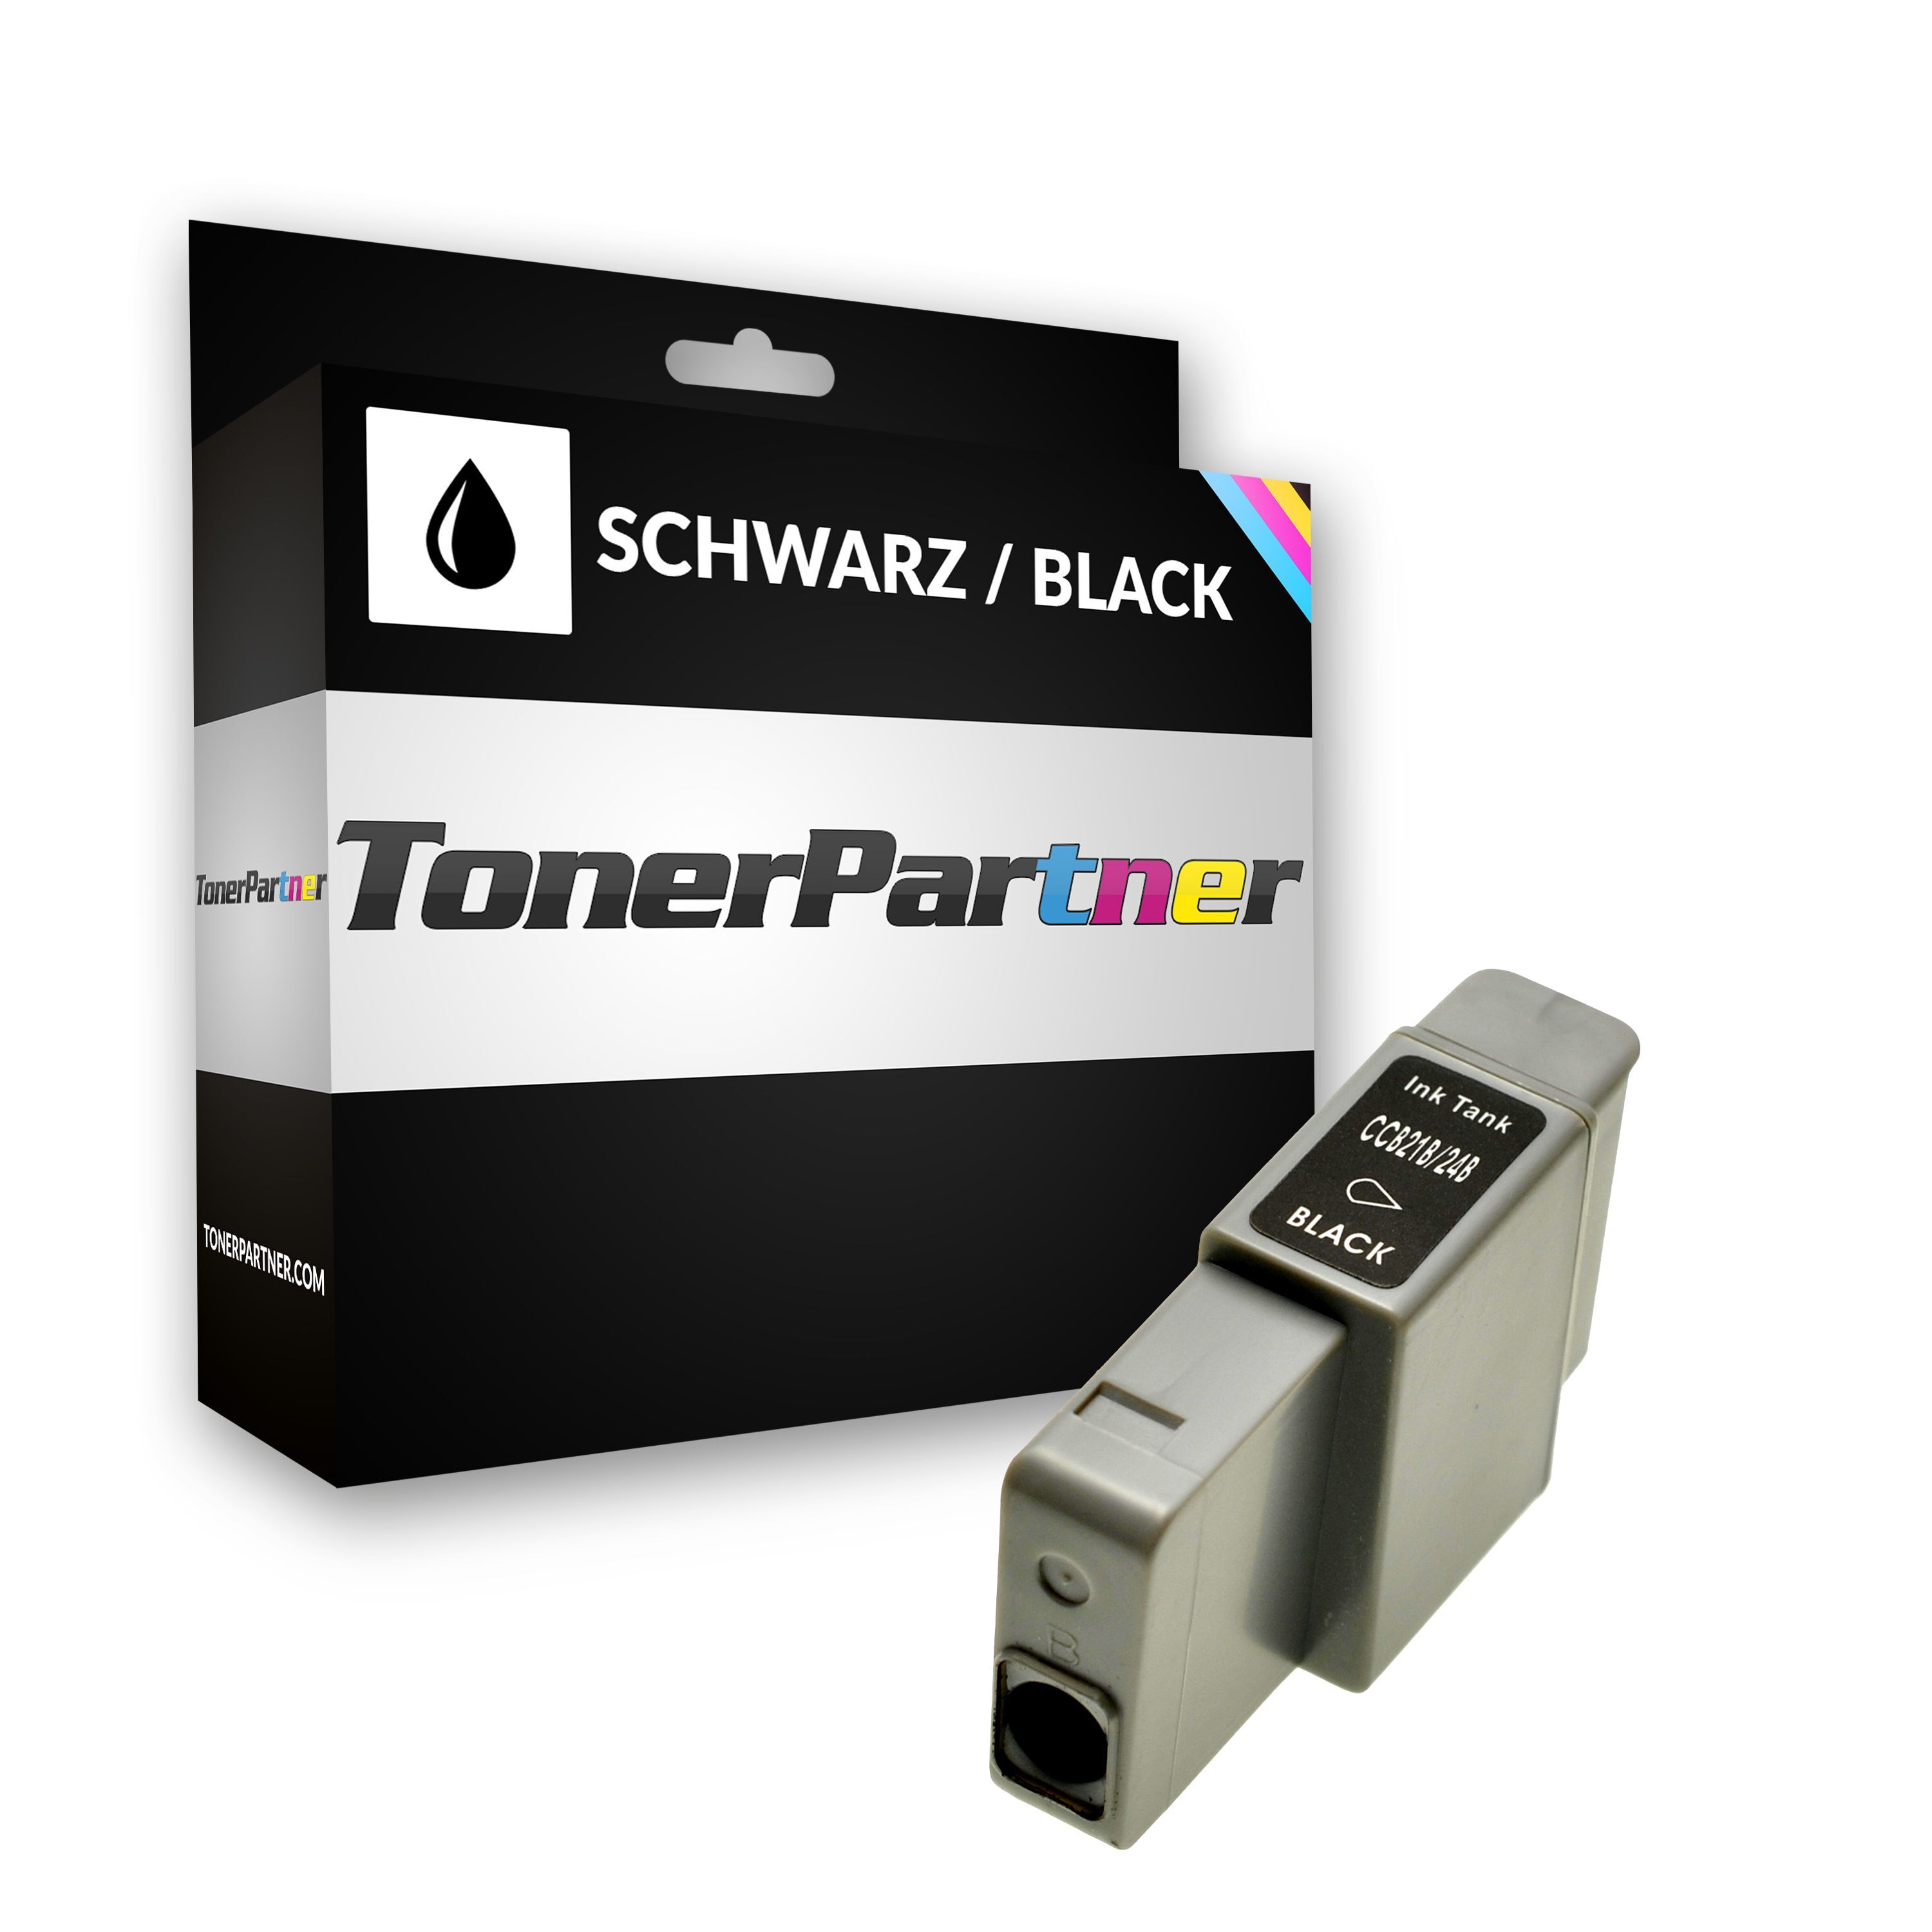 TonerPartner Kompatibel zu Canon S 330 Tintenpatrone (BCI-24 BK / 6881 A 002) schwarz, 240 Seiten, 1,44 Rp pro Seite, Inhalt: 9 ml von TonerPartner